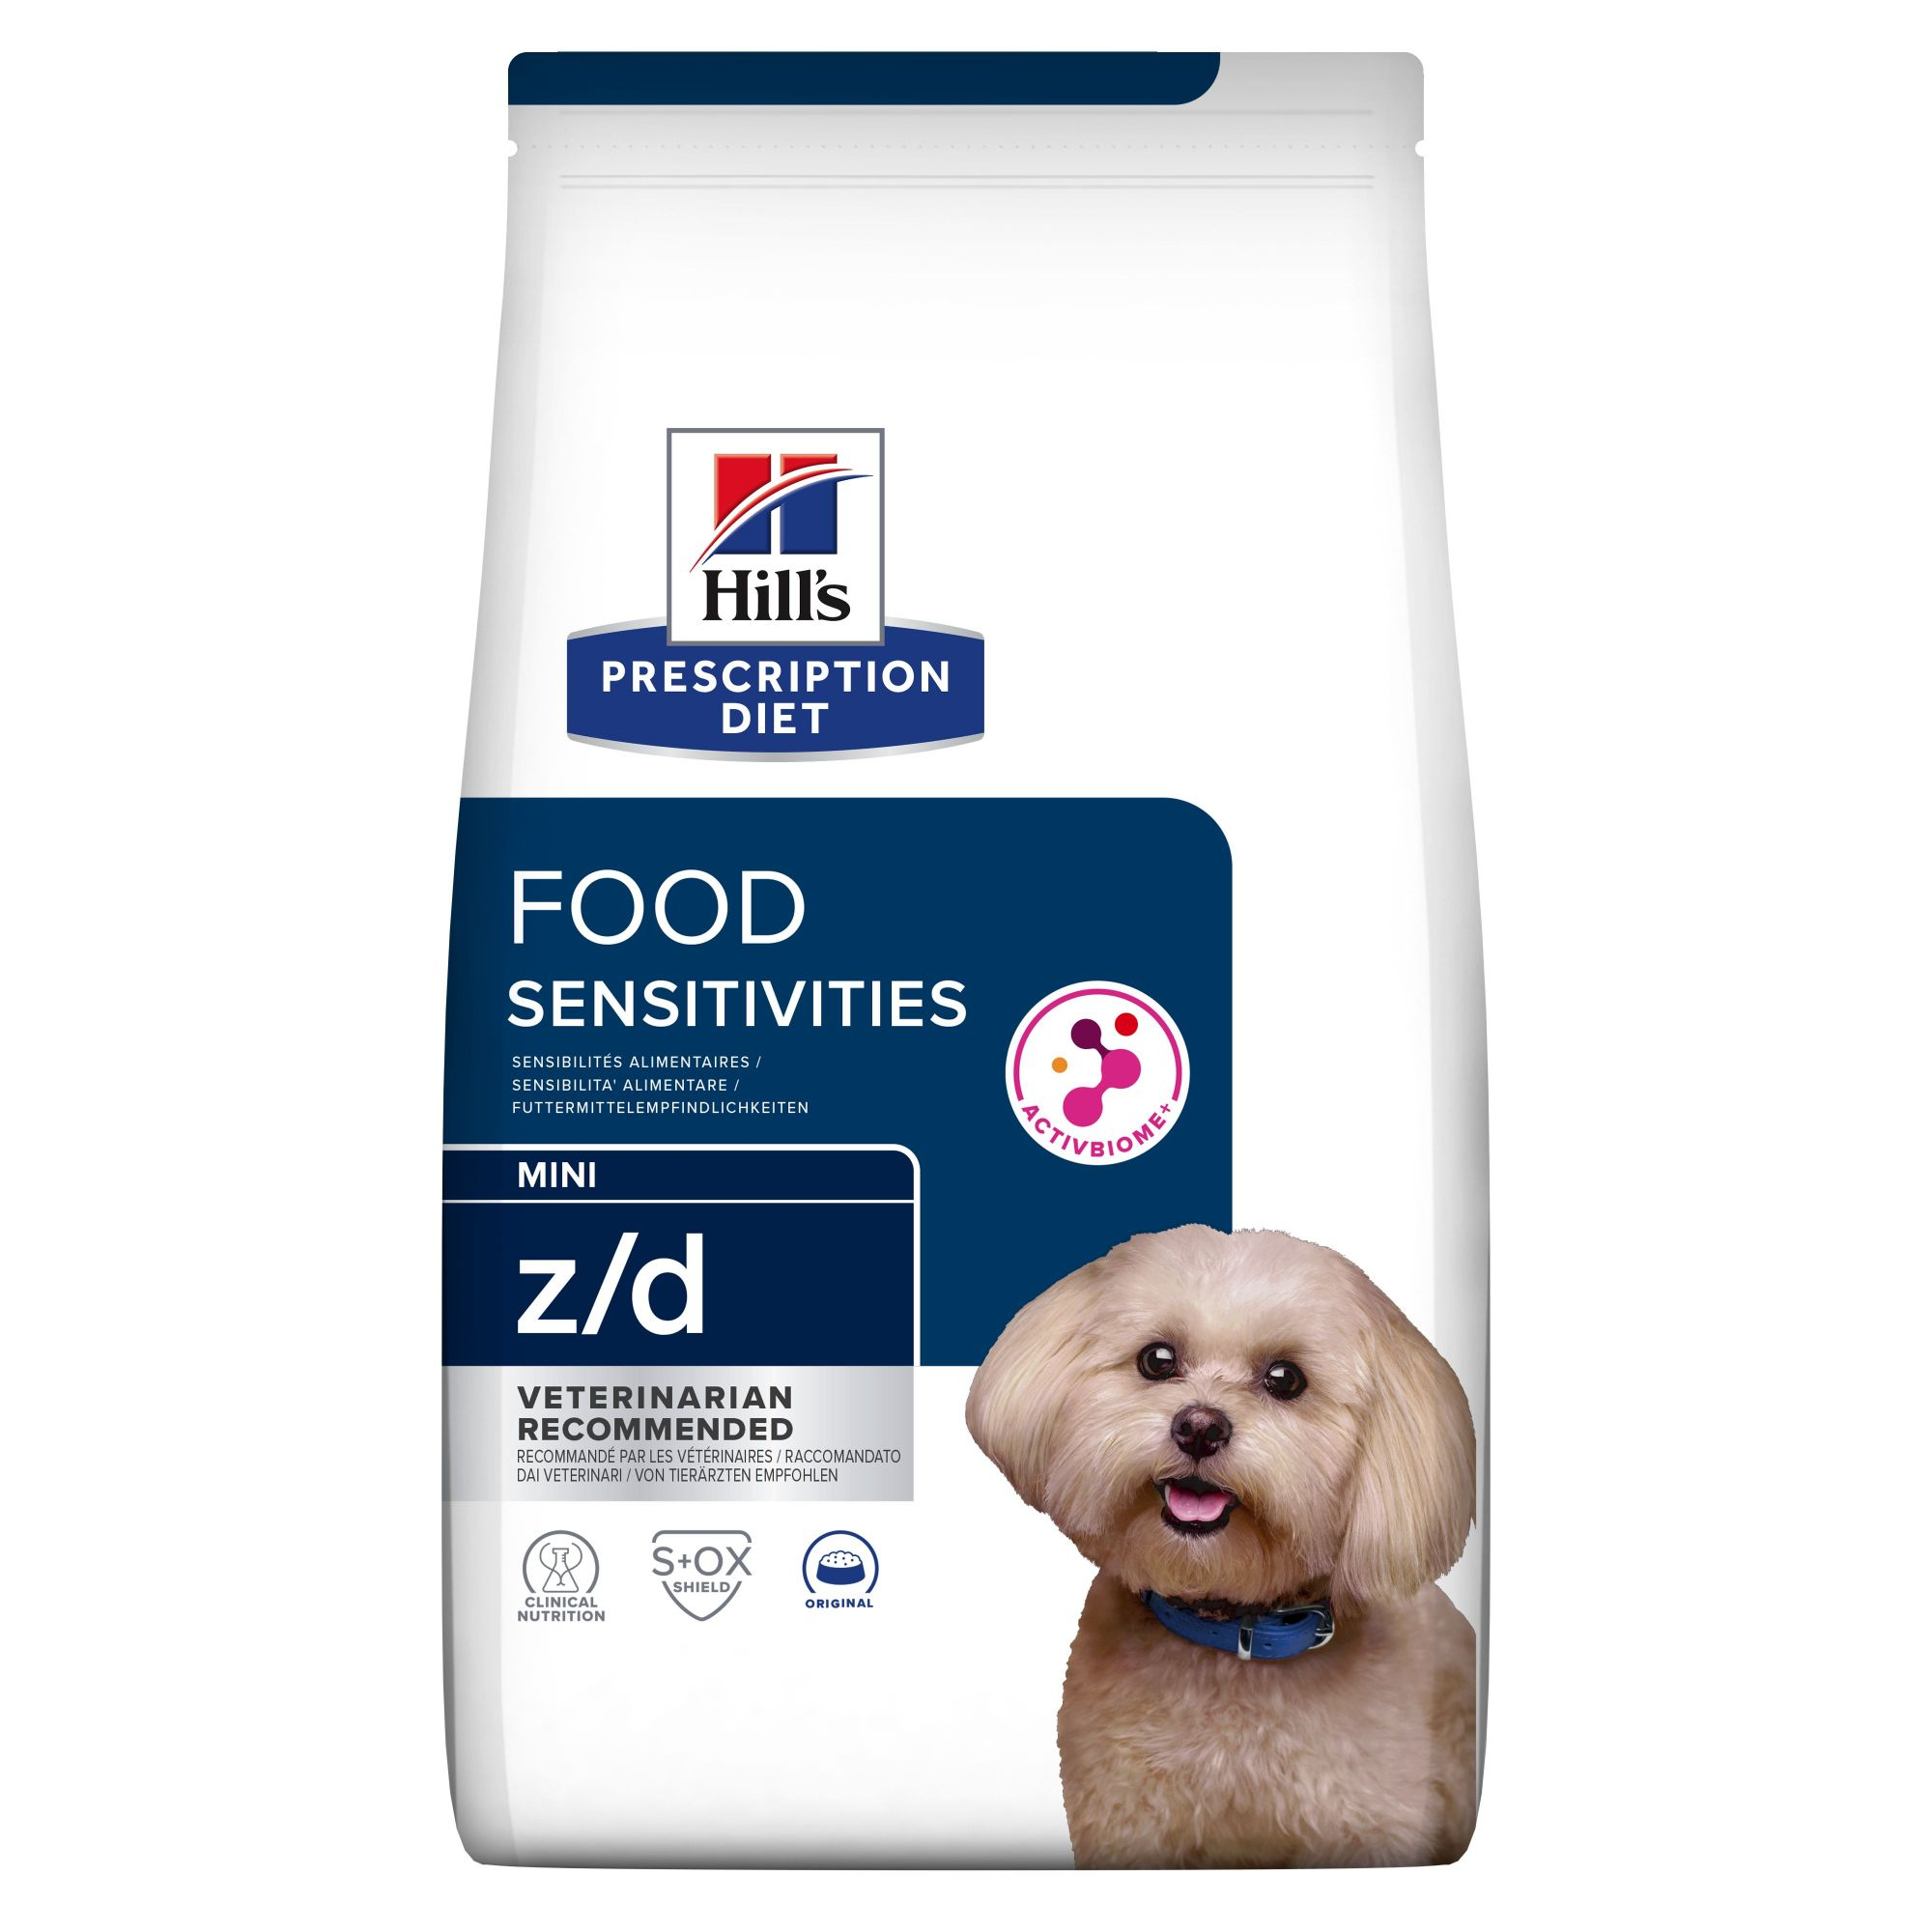 Hill's Prescription Diet z/d Sensibilità alimentare Mini crocchette per cani di piccola taglia